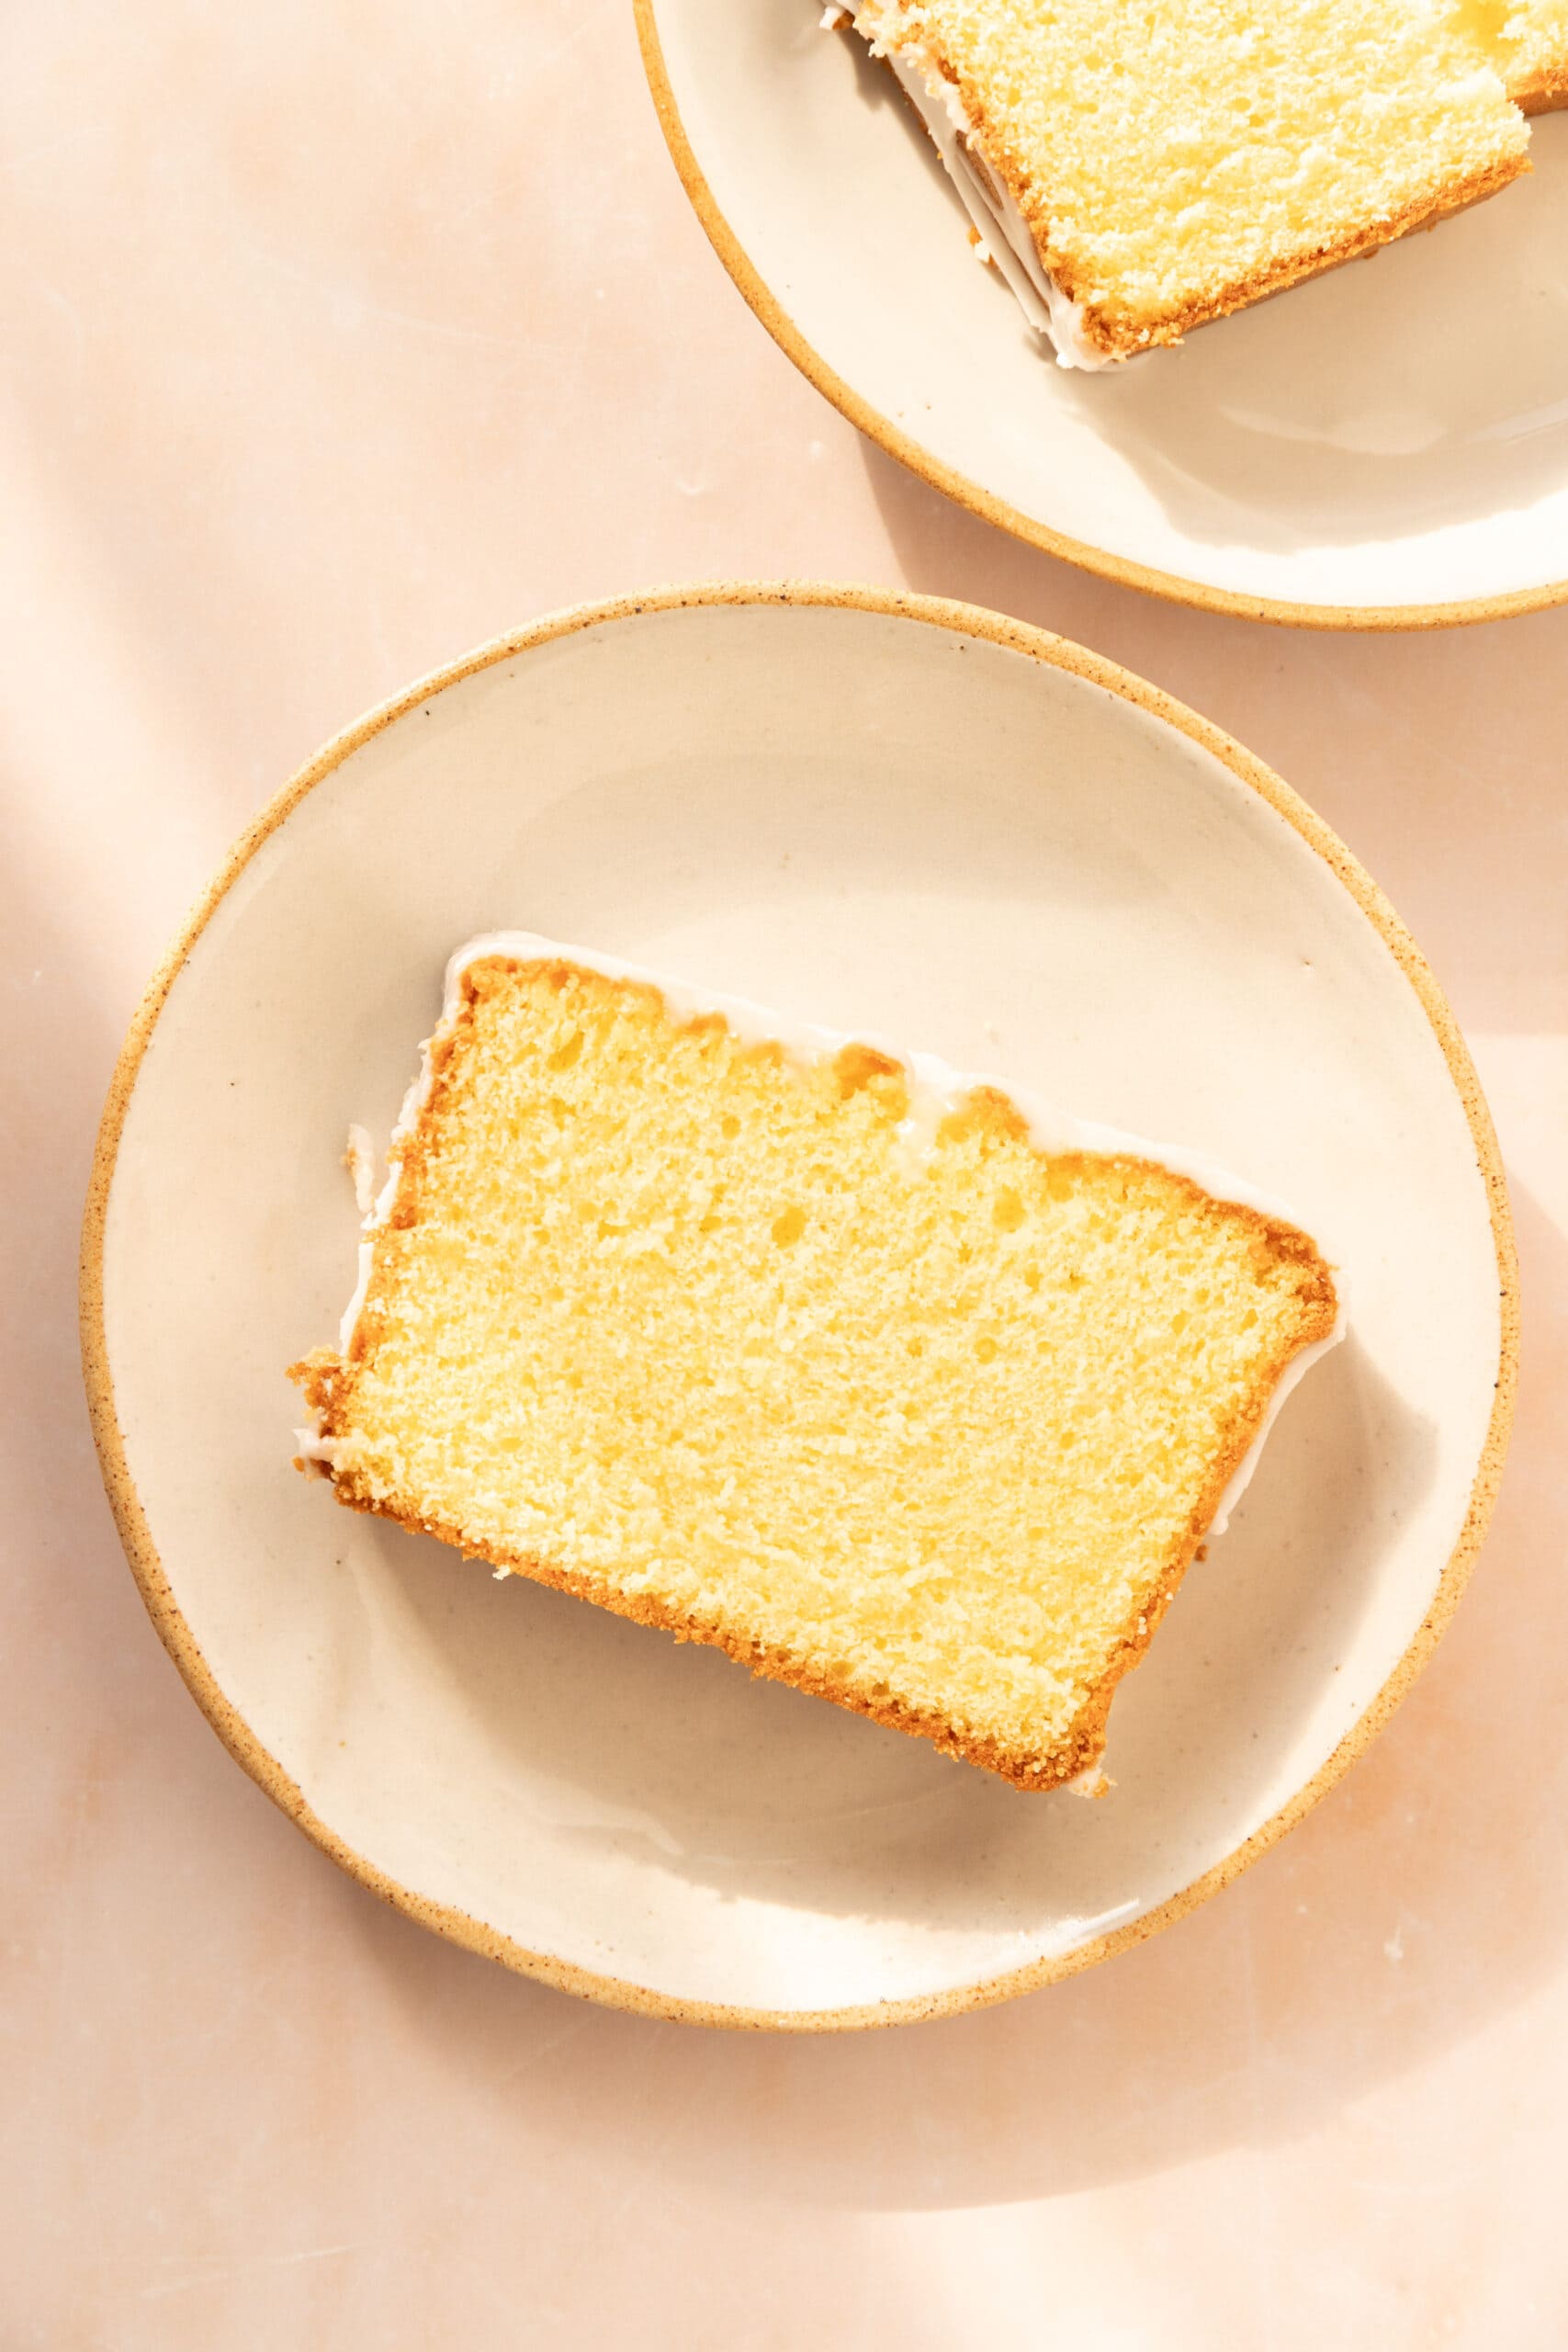 Slice of lemon loaf cake on a white plate. 